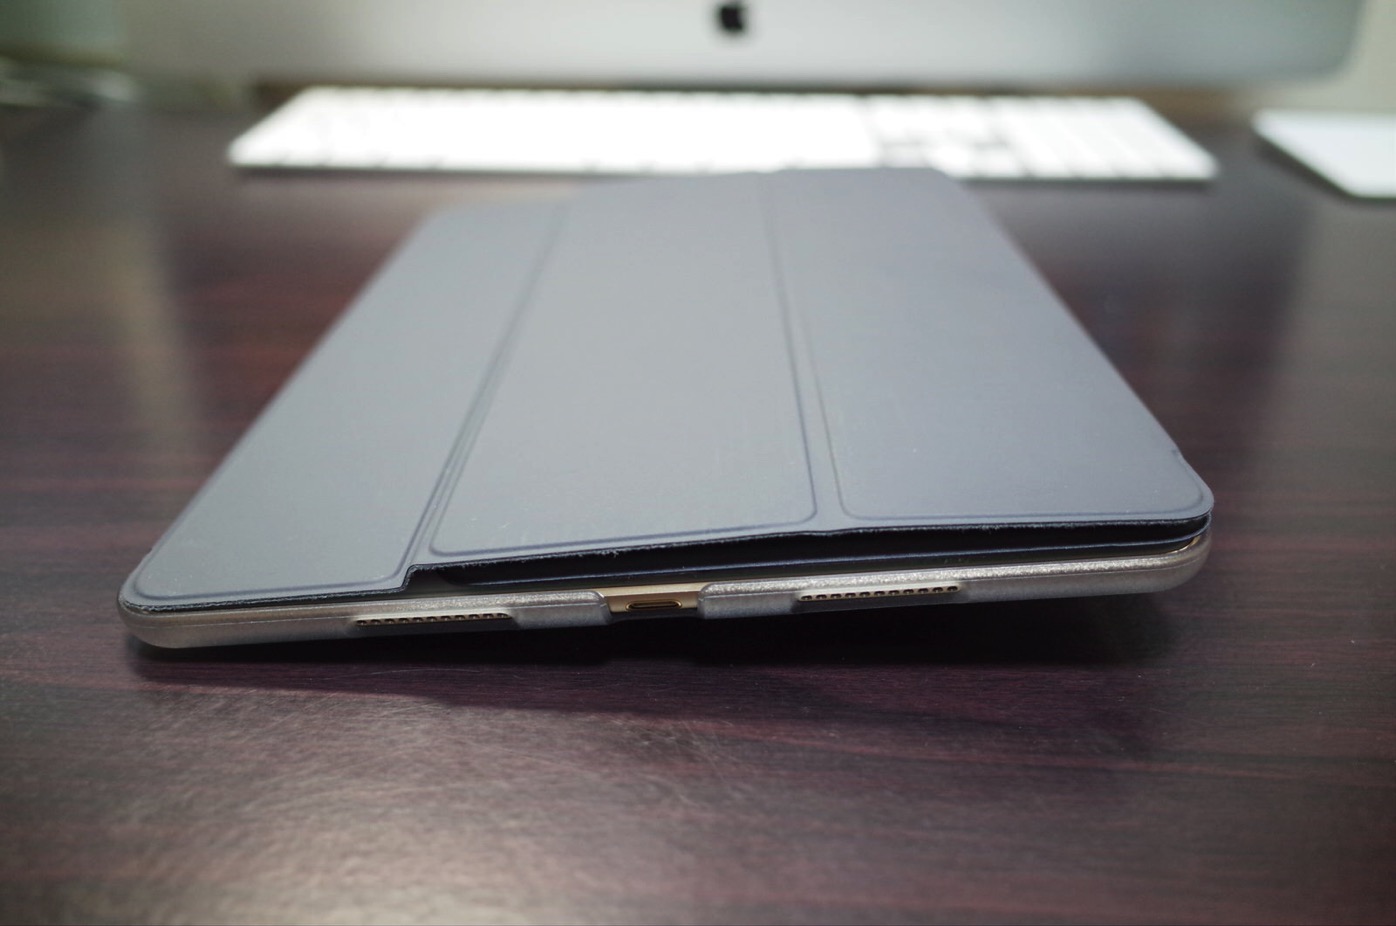 iPad Pro 10.5 ケース SwitchEasy CoverBuddy ハード バック カバー Apple Pencil 収納付き 純正 スマートキーボード 対応-8